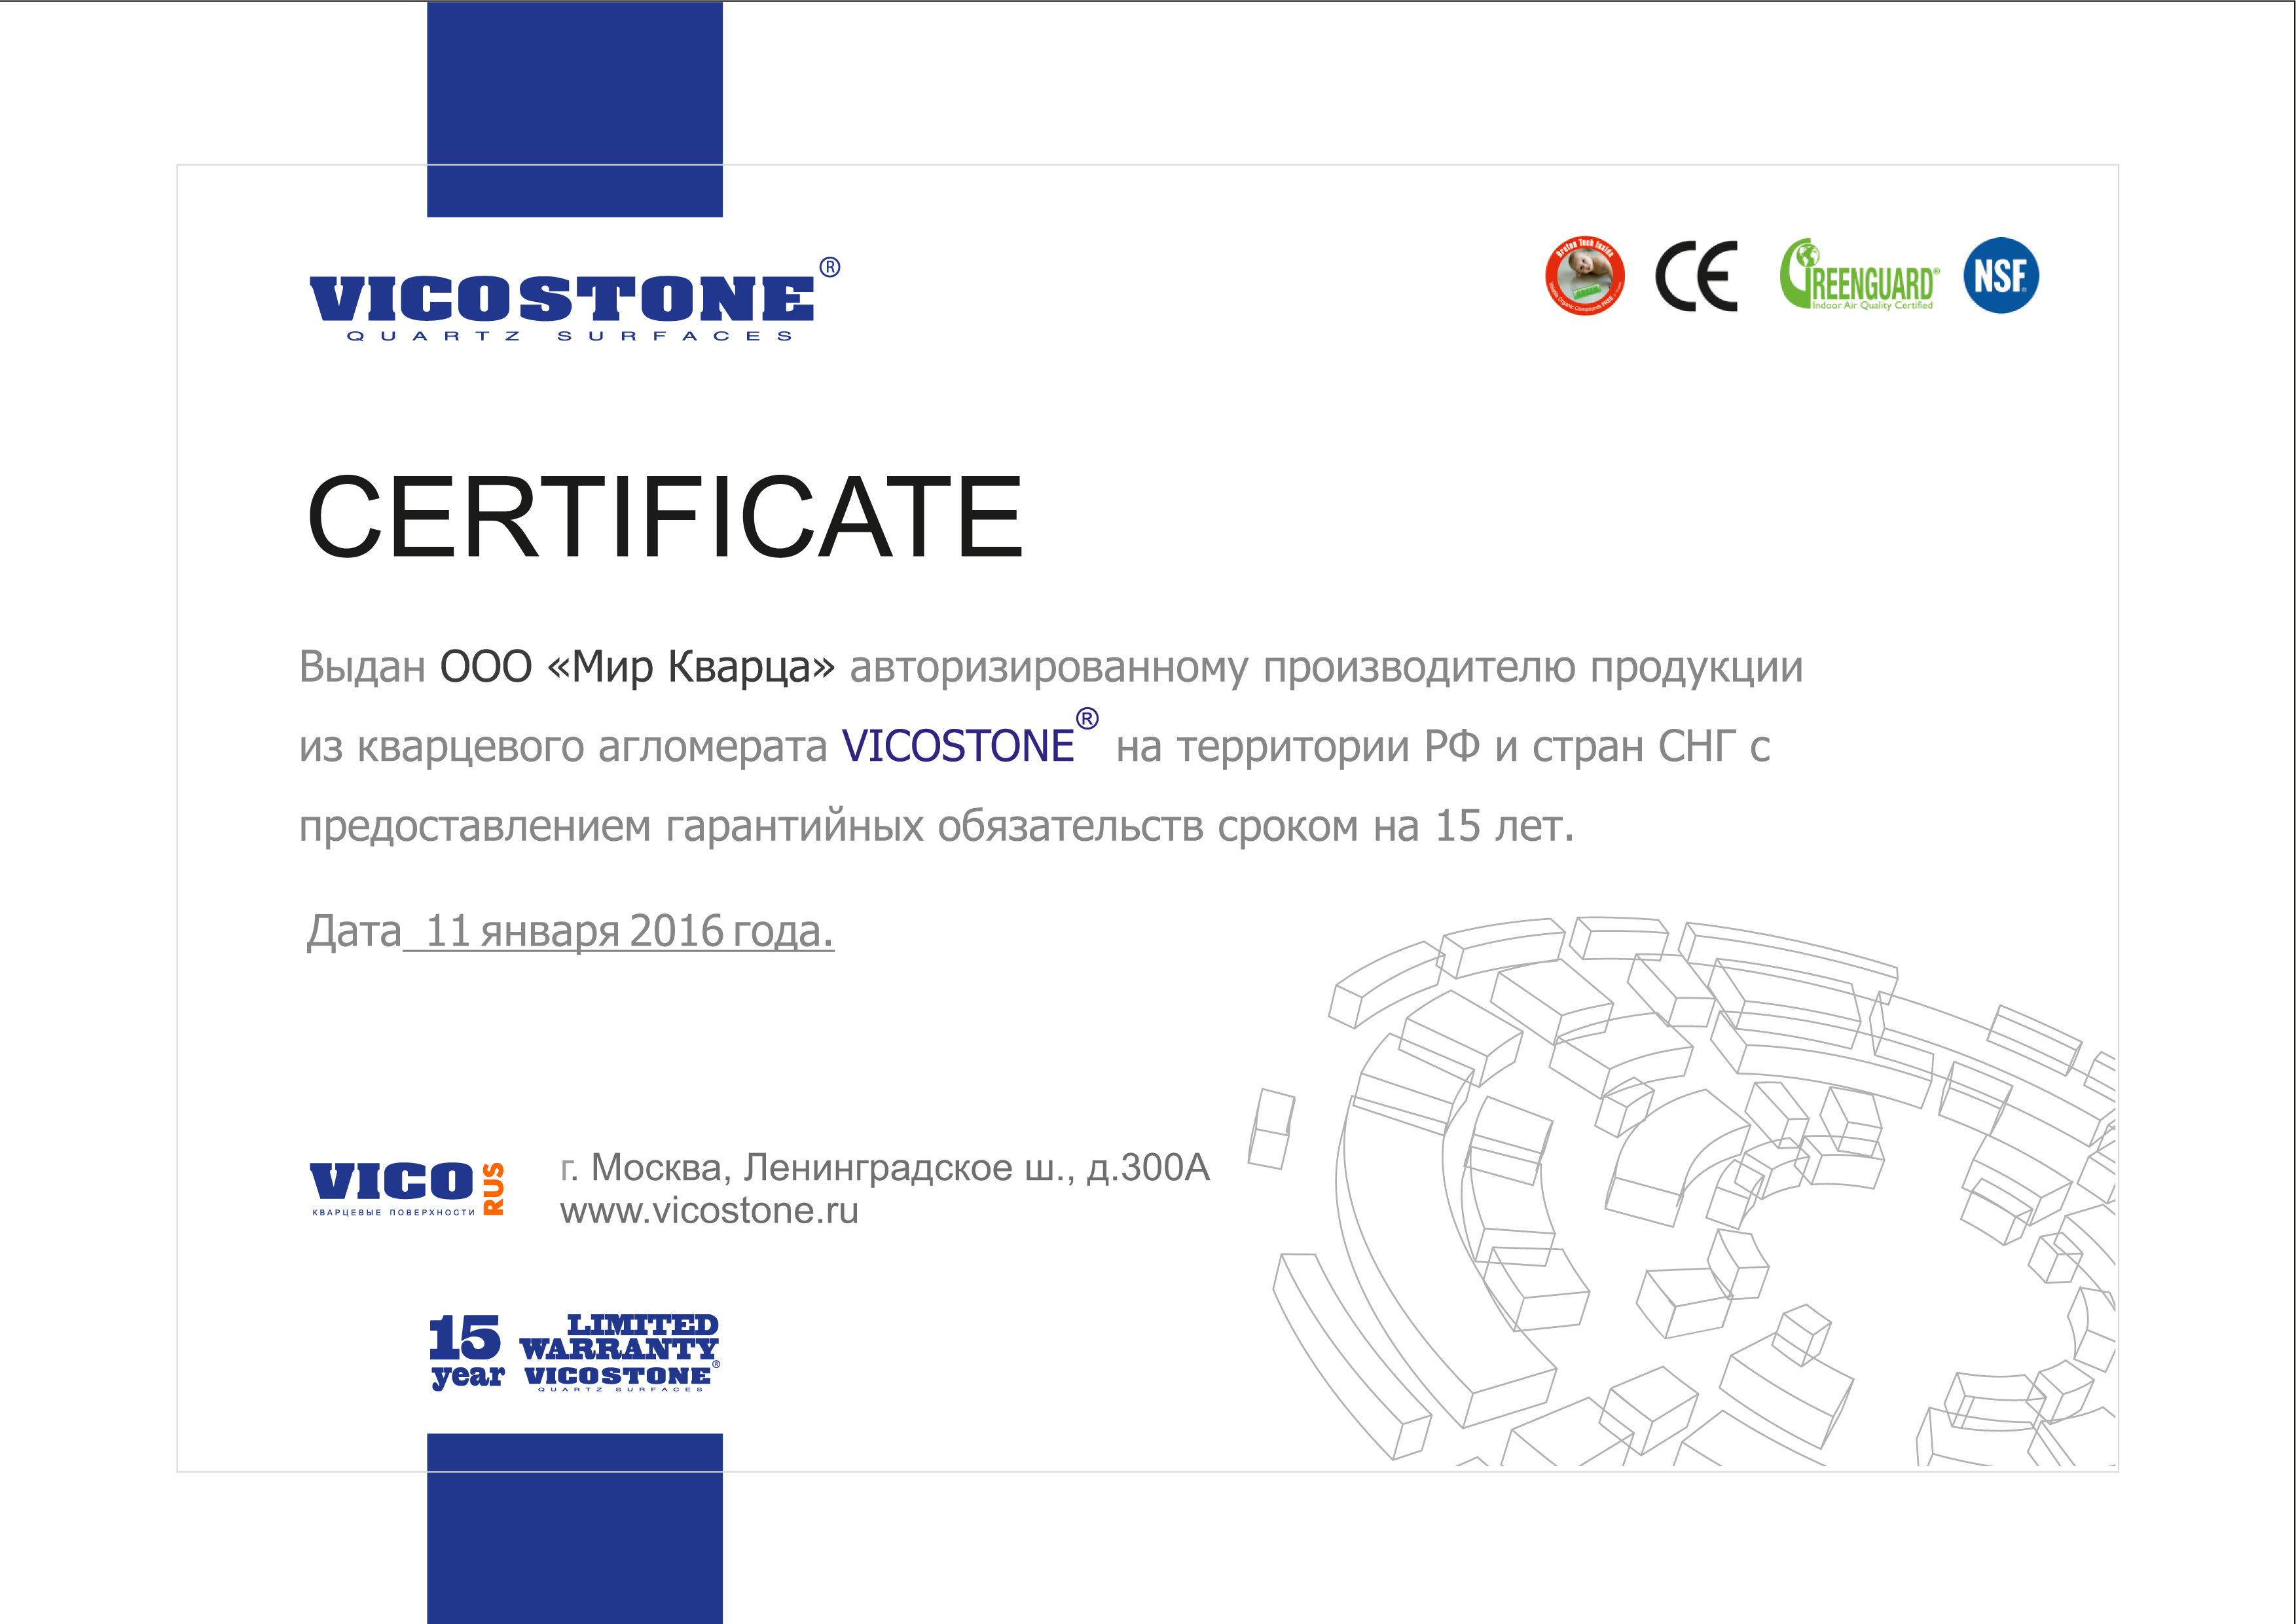 Мир Кварца сертификат Vicostone